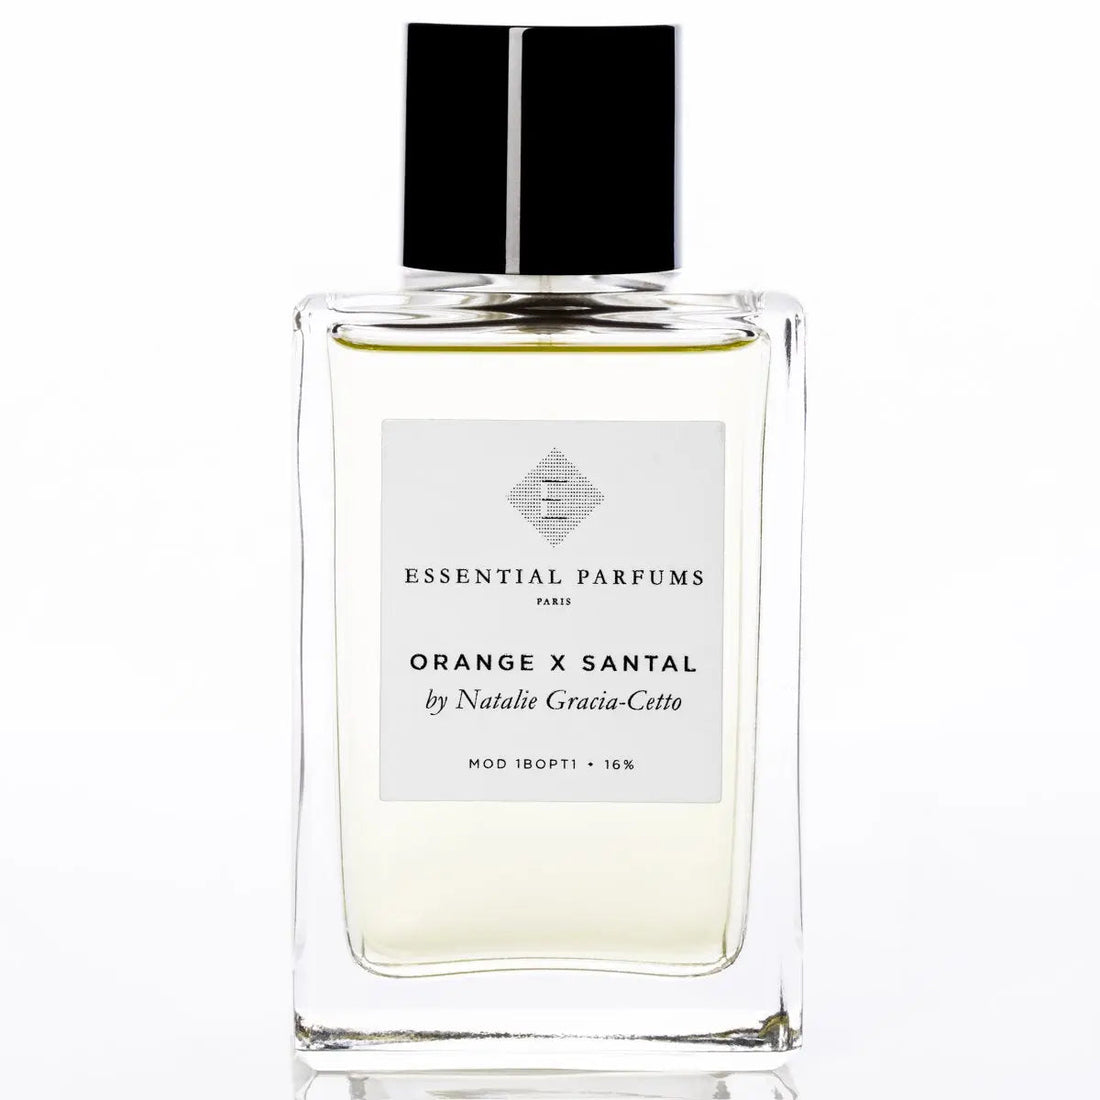 Essential parfums Orange X Santal eau de parfum - 150 ml refill